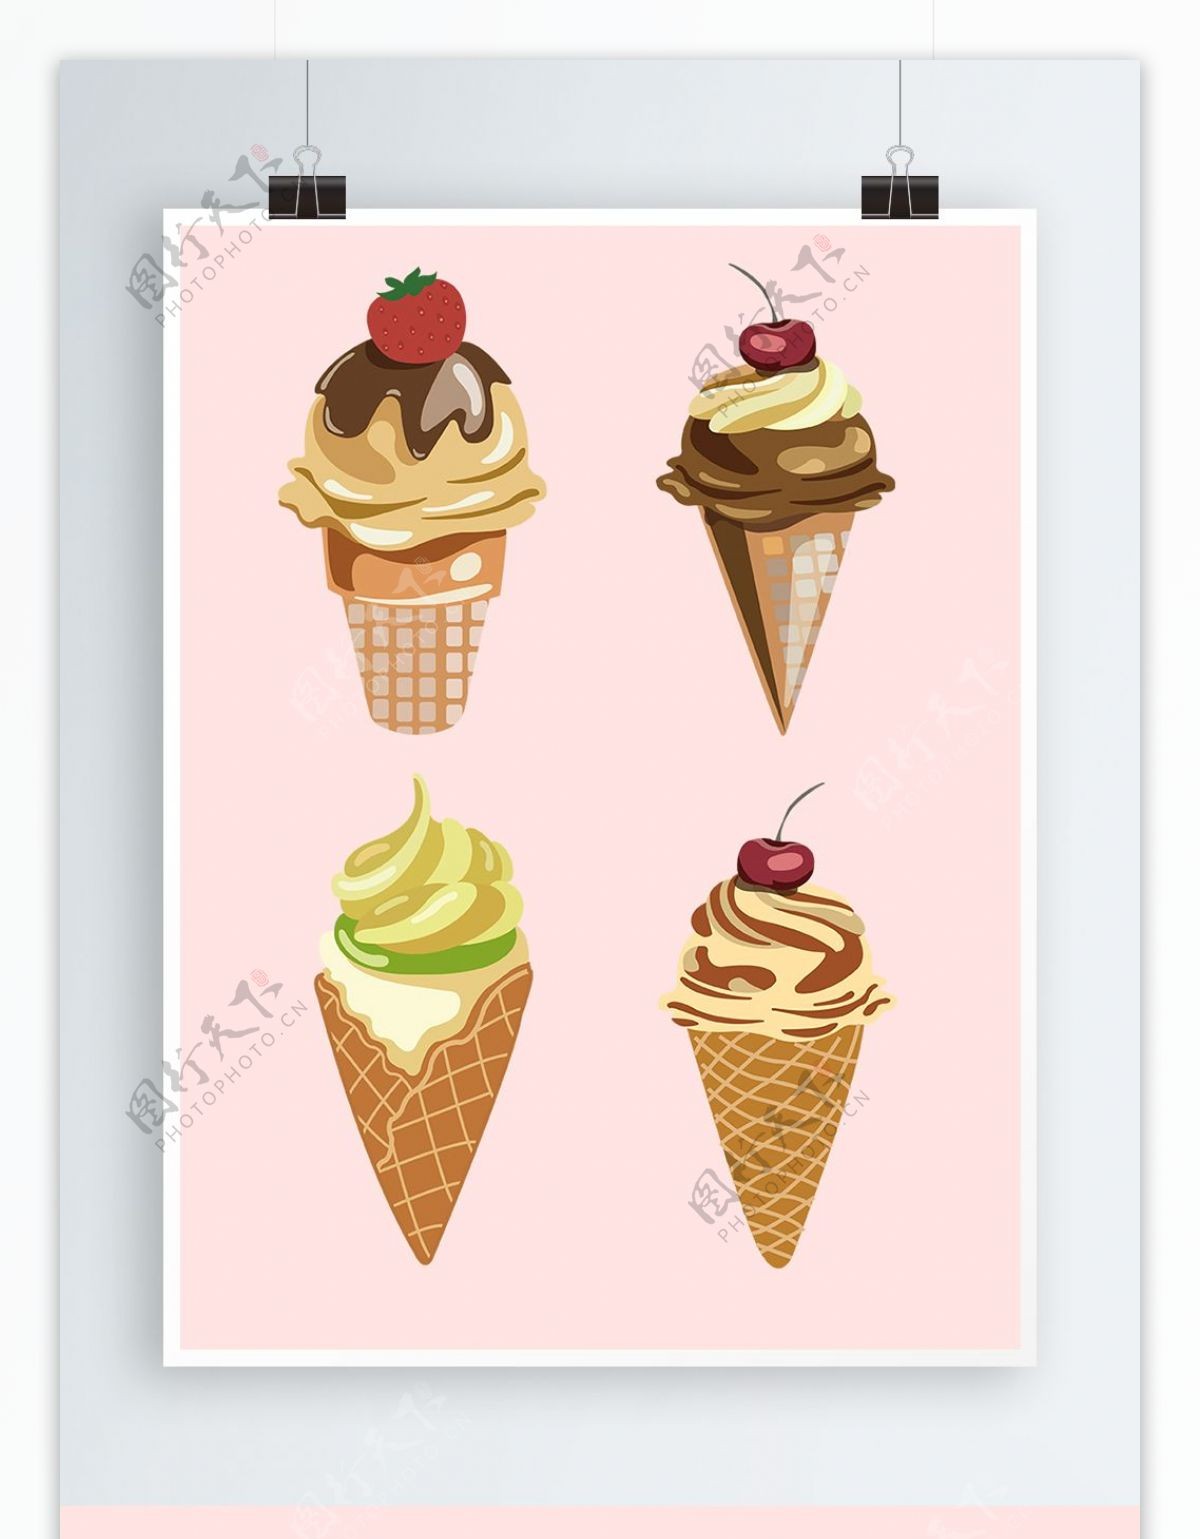 简约可爱冰淇淋甜品图形元素